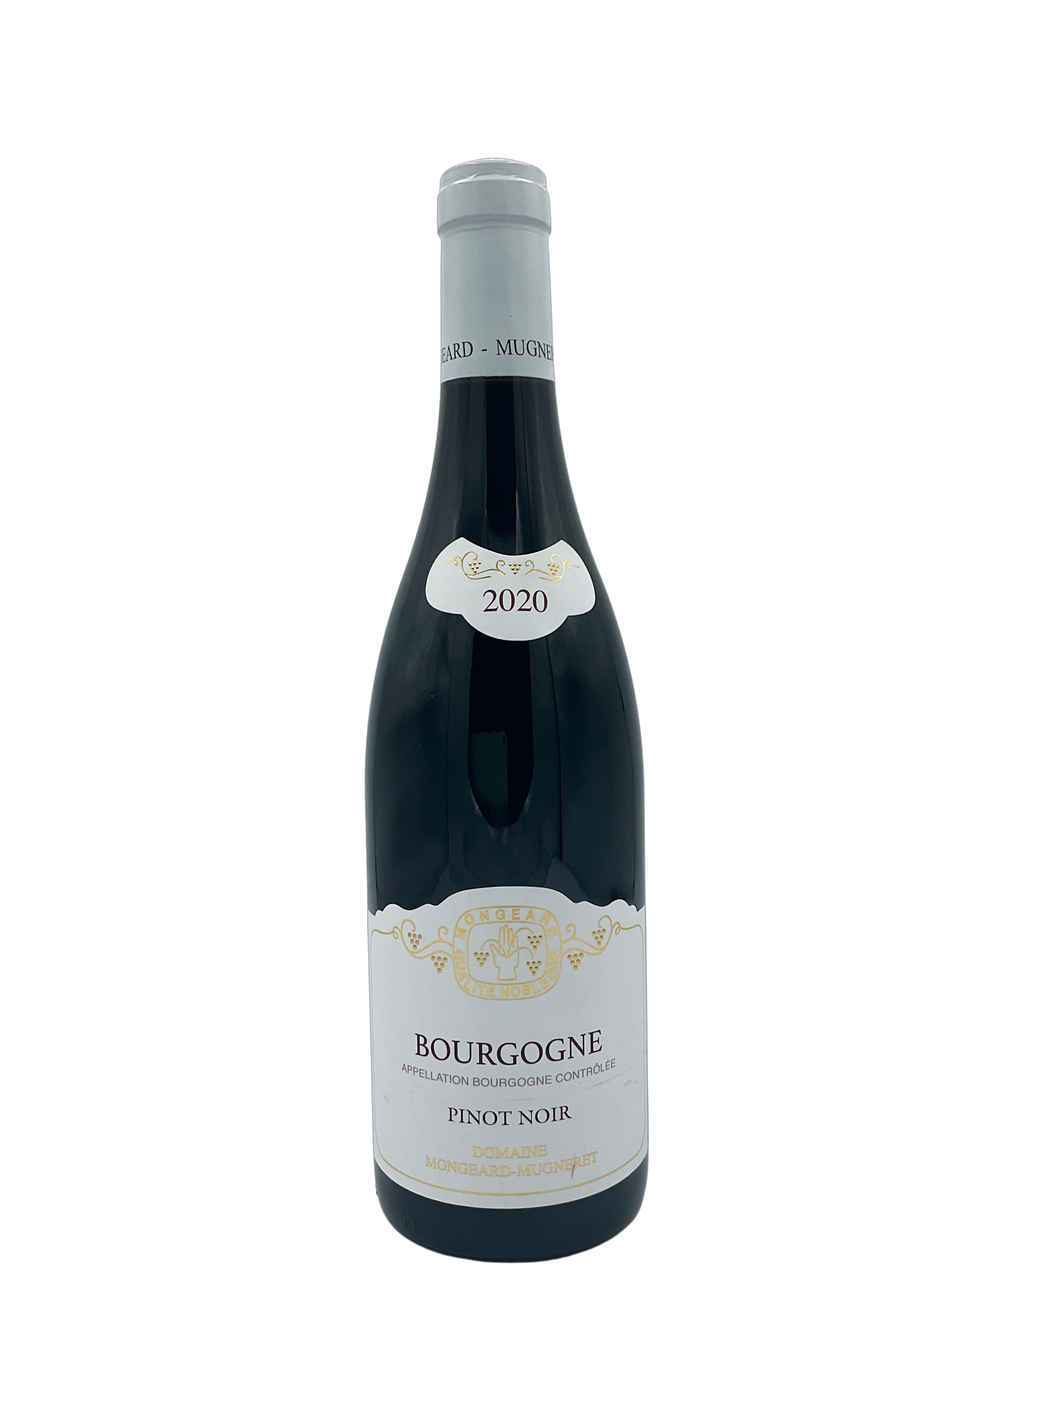 Mongeard-Mugneret 2020 Bourgogne Rouge